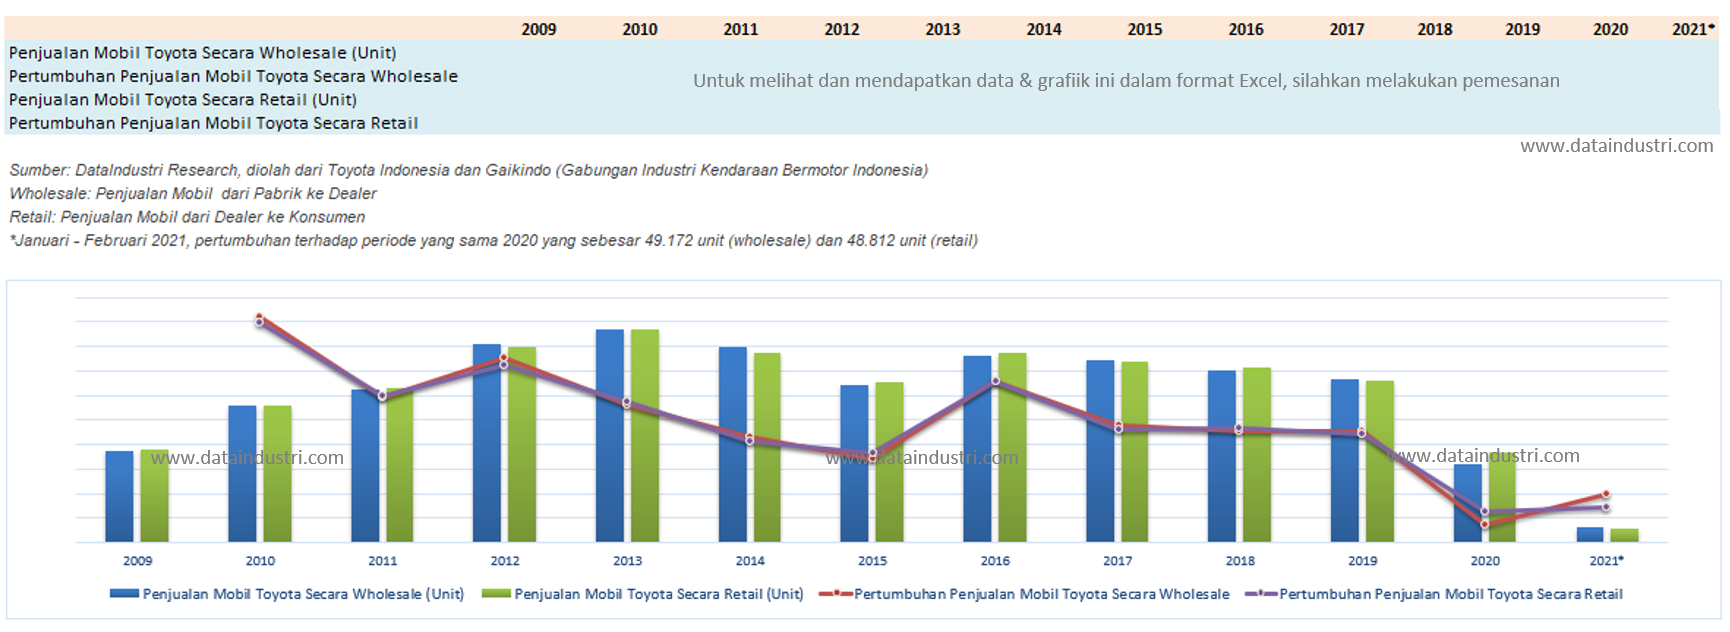 Tren Data Penjualan Mobil Toyota (Wholesale dan Retail) di Indonesia, 2009 - 2021